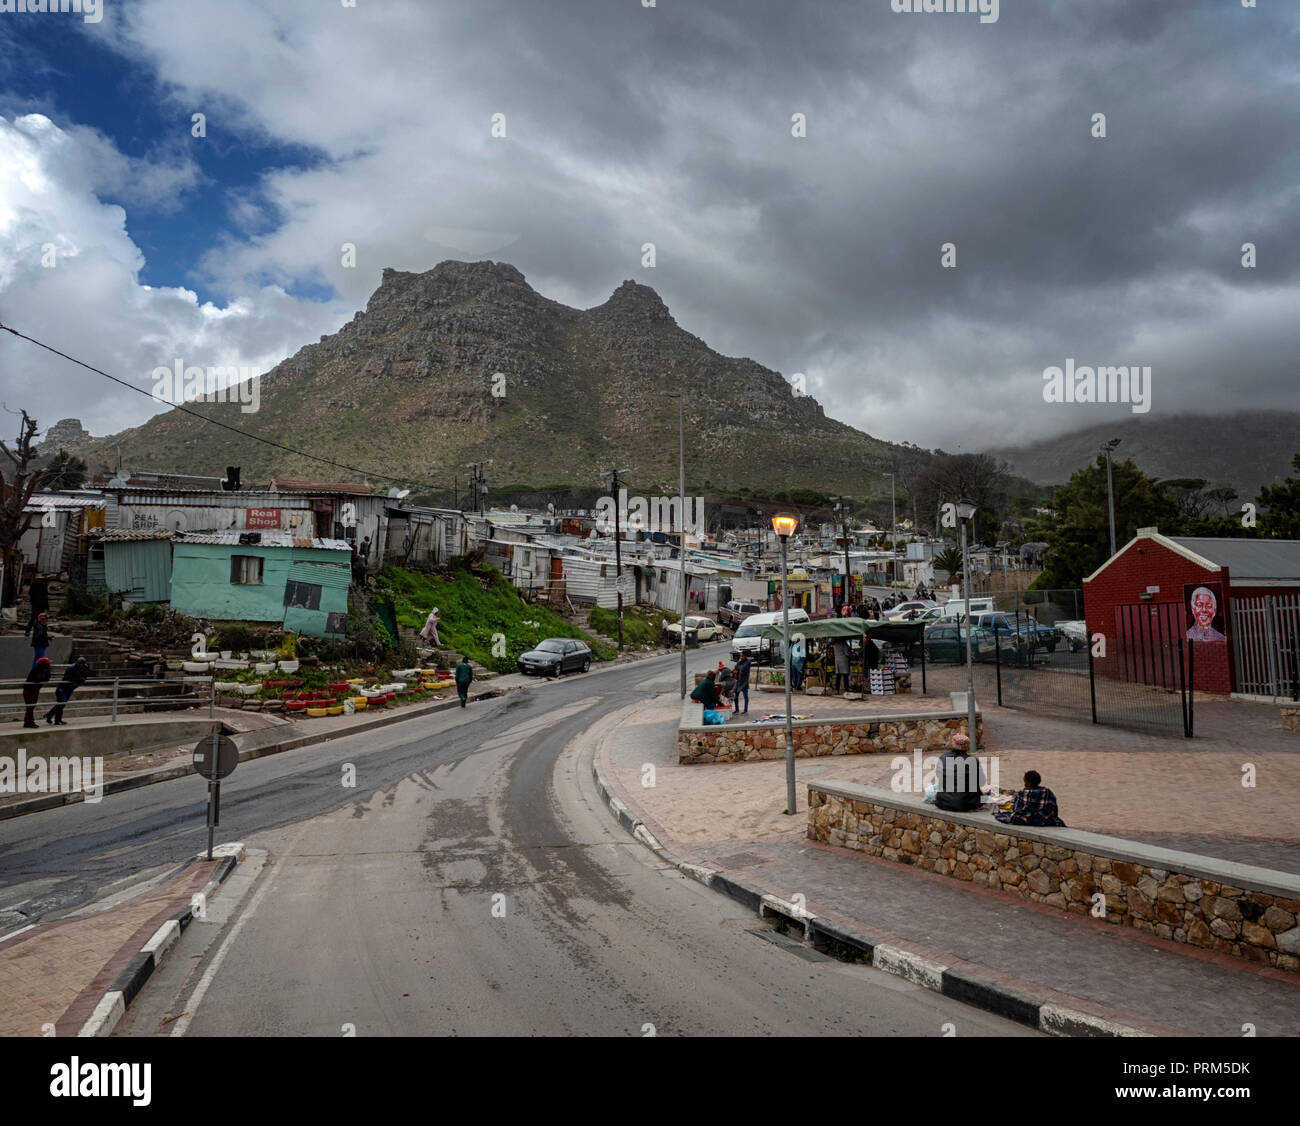 Entrée de Imizamo Yethu, un township, ou 'bidonville' dans la région de Hout Bay, près de Cape Town, Afrique du Sud Banque D'Images